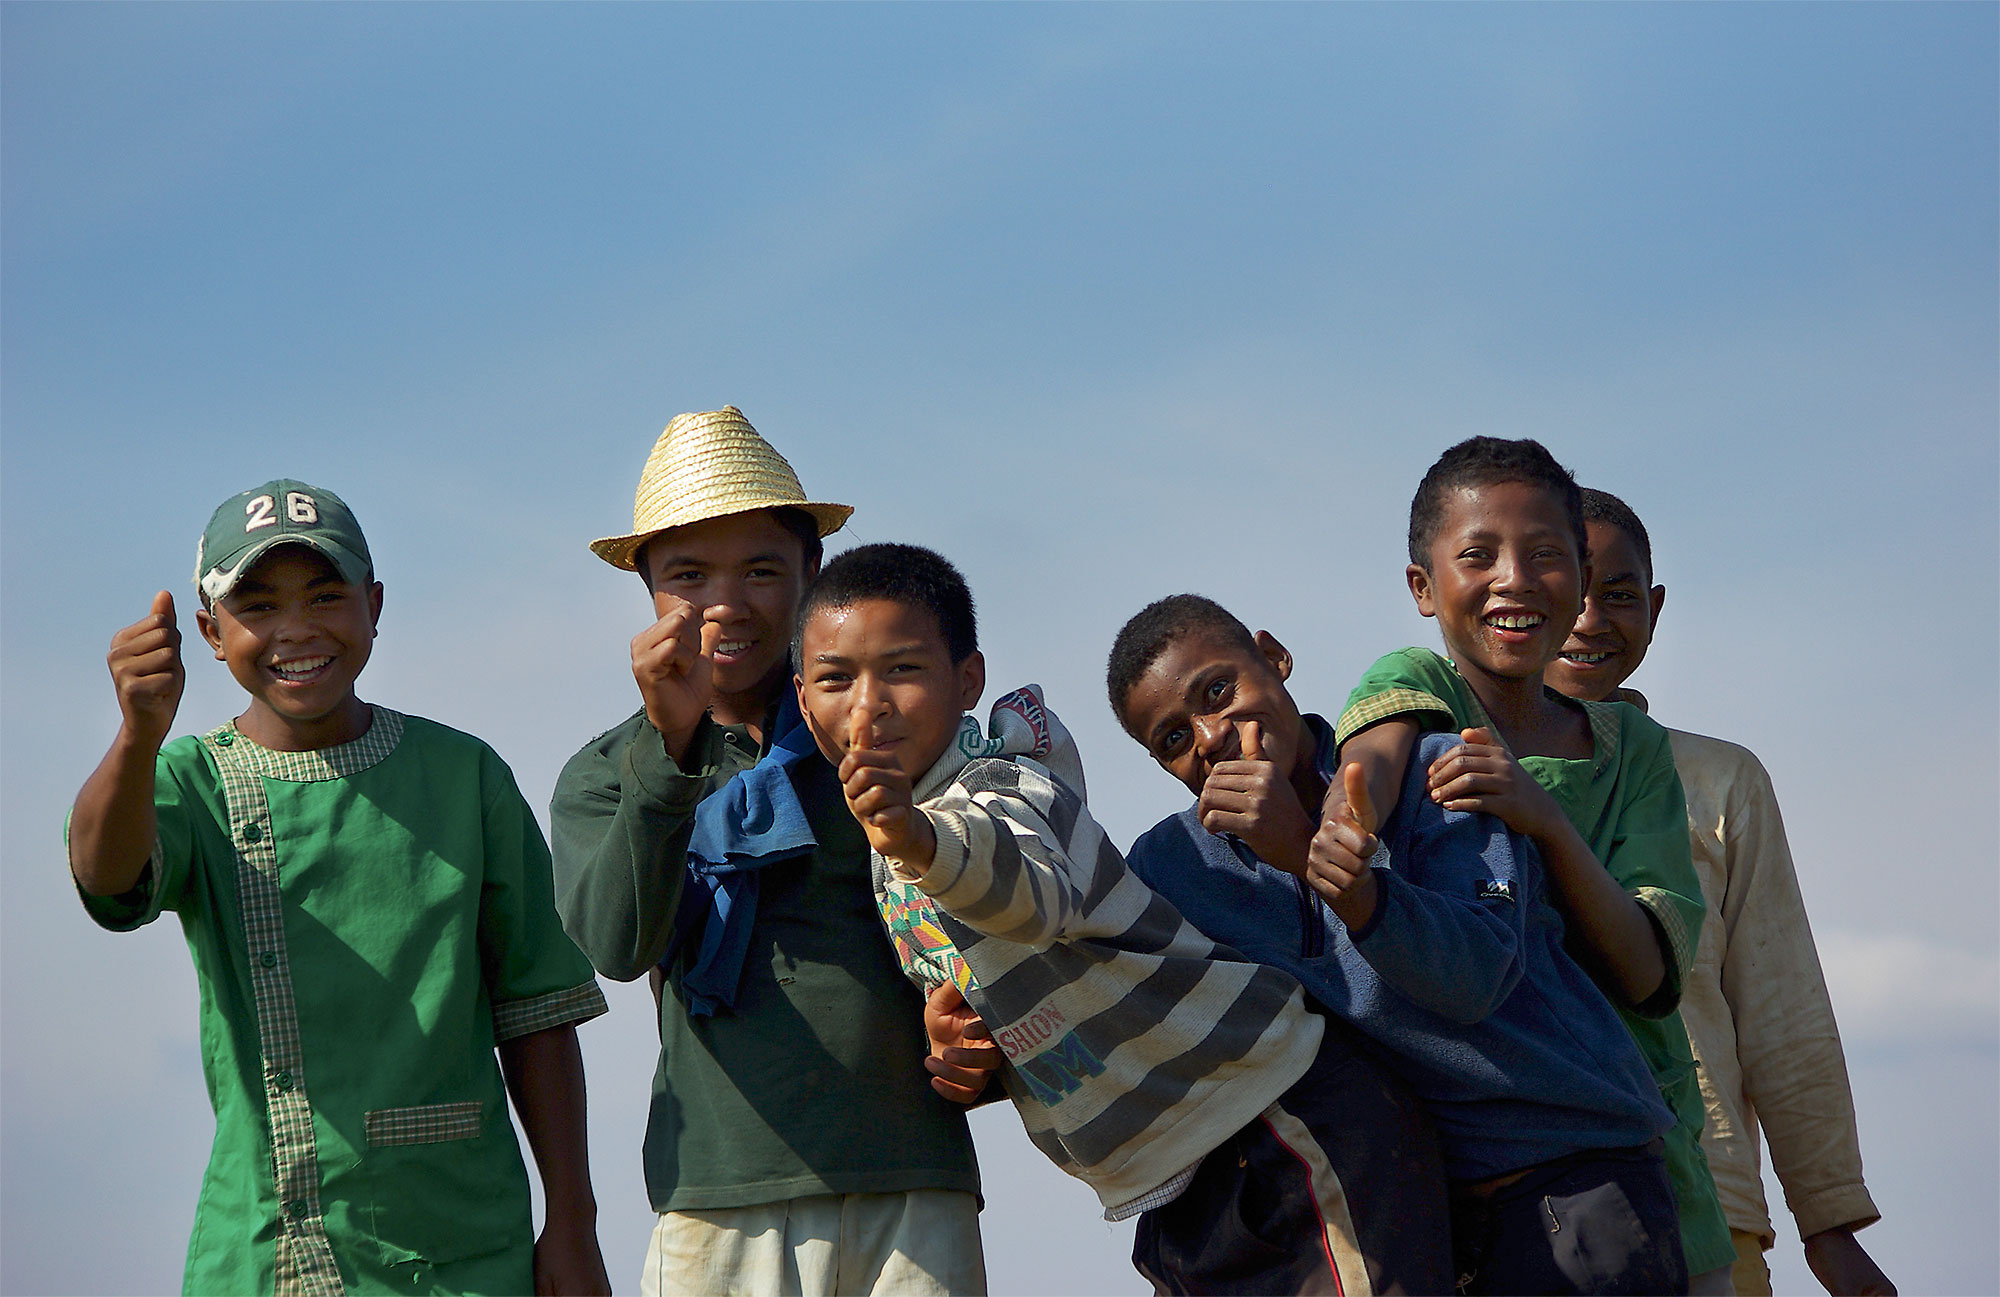 The joy of being photographed, Analaroa Madagascar...